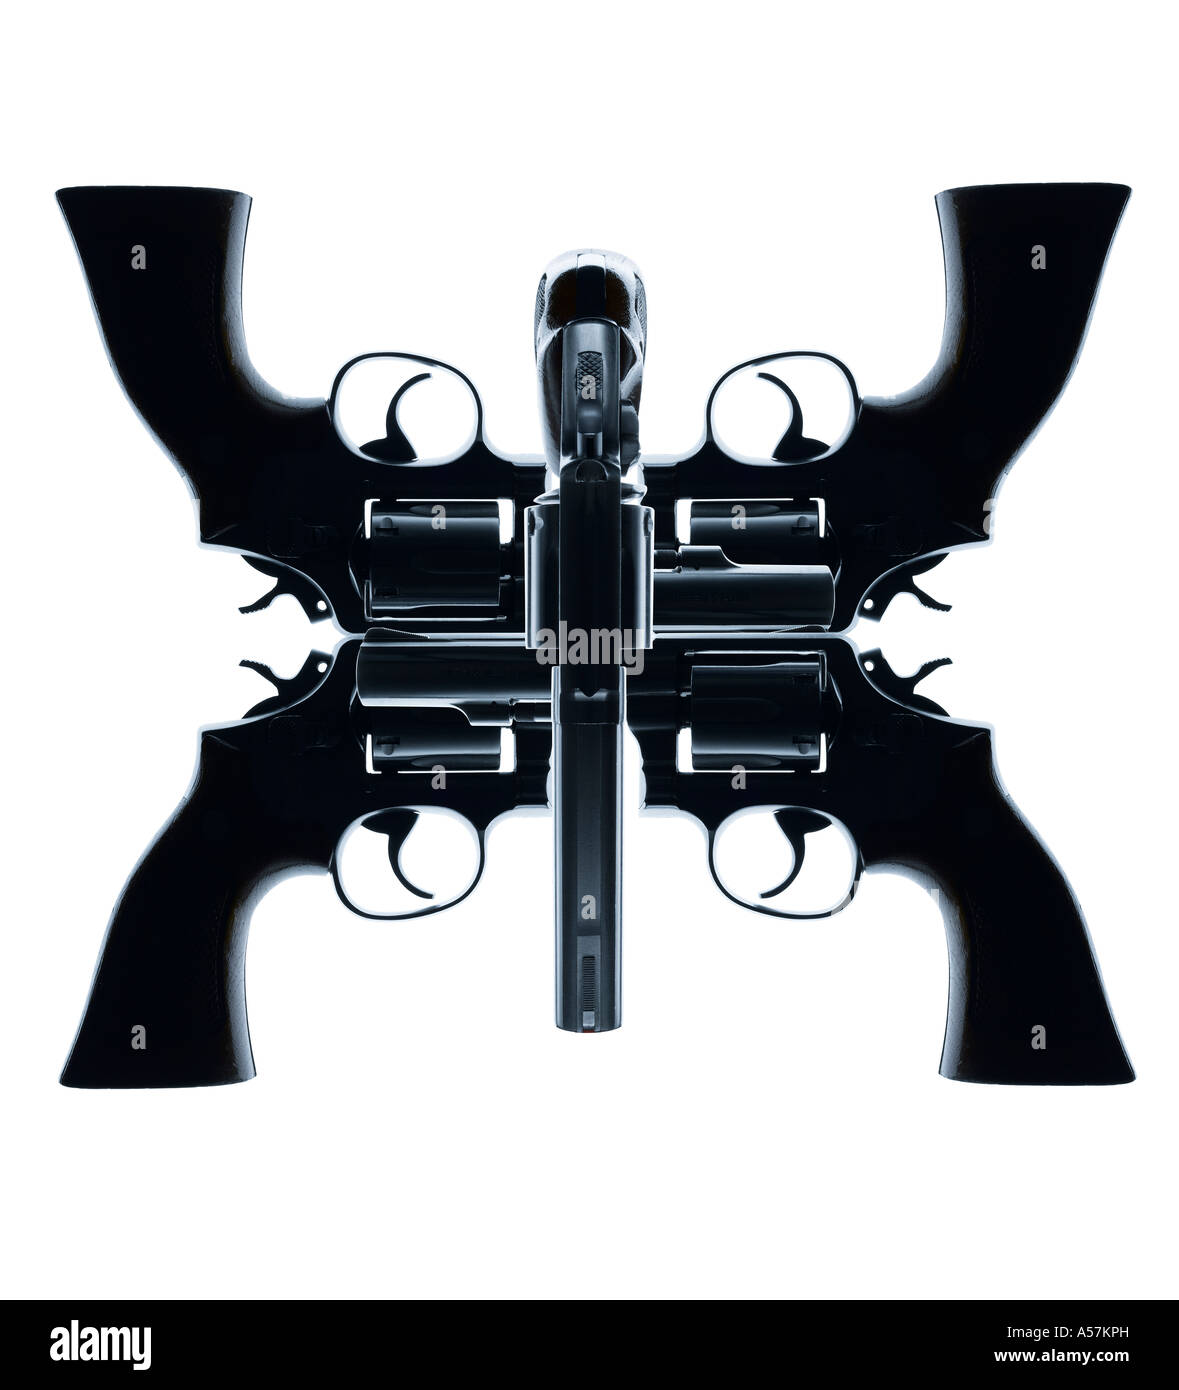 Fünf Handfeuerwaffen kreativ positioniert, um ein Gesicht oder eine interessante Form erstellen Stockfoto